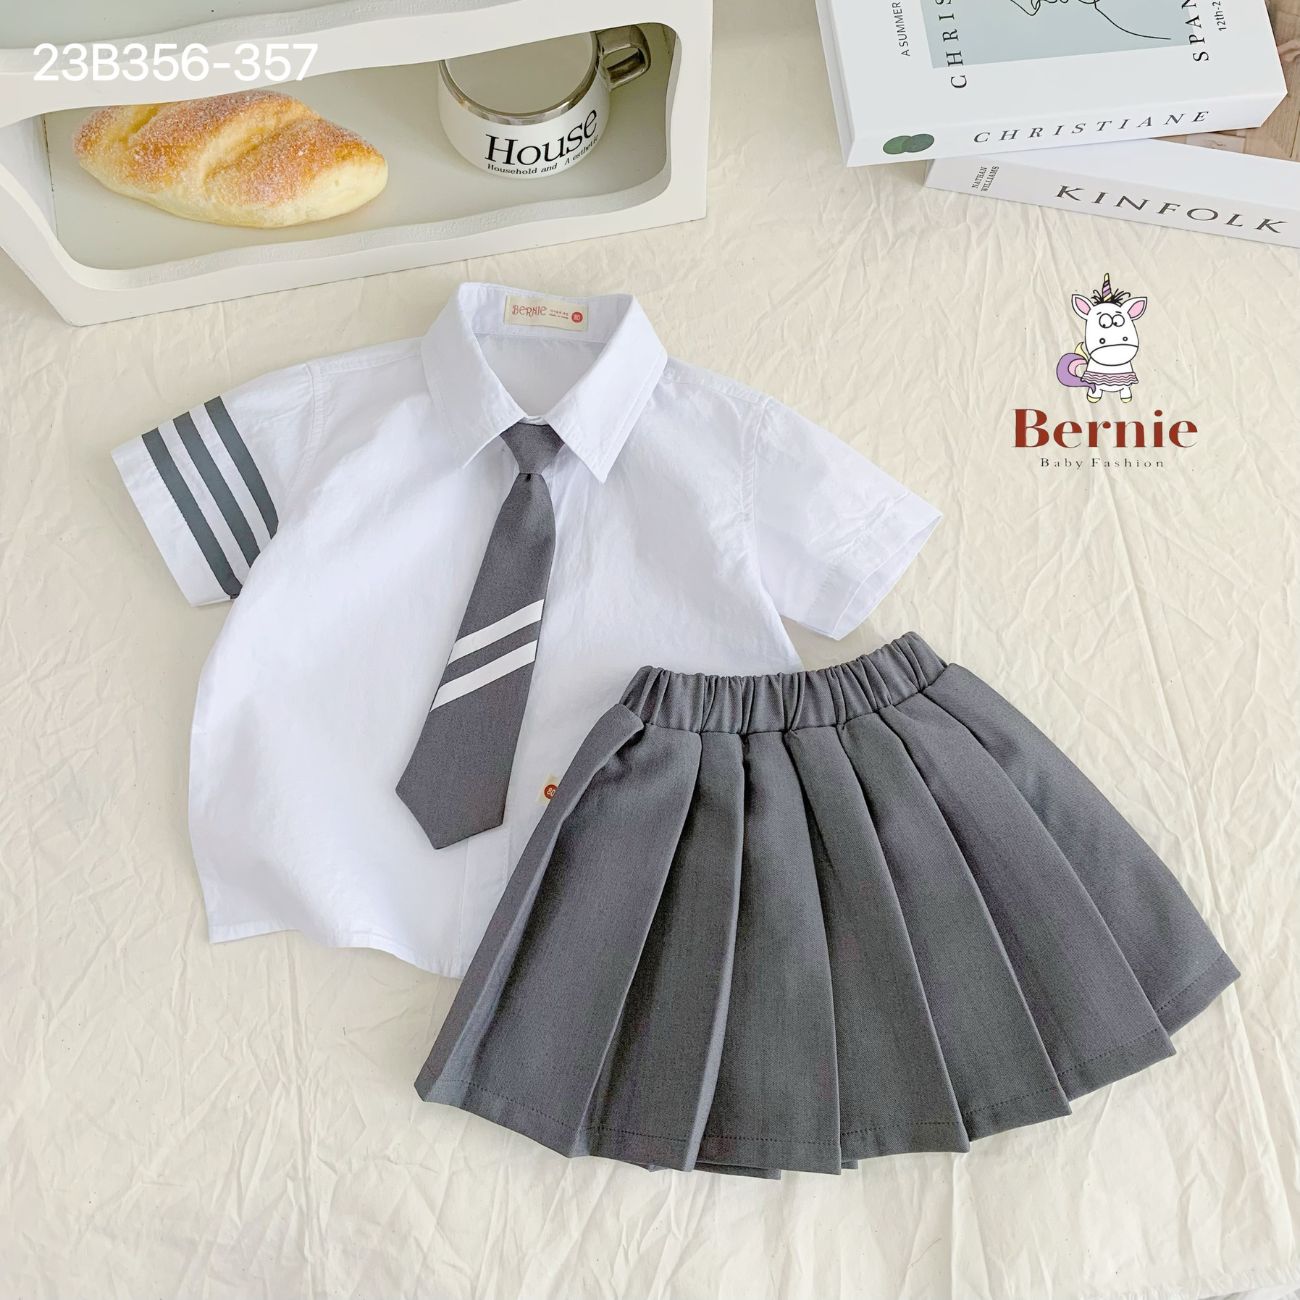 Sét đồng phục đôi BERNIE kèm caravat cho bé trai và bé gái